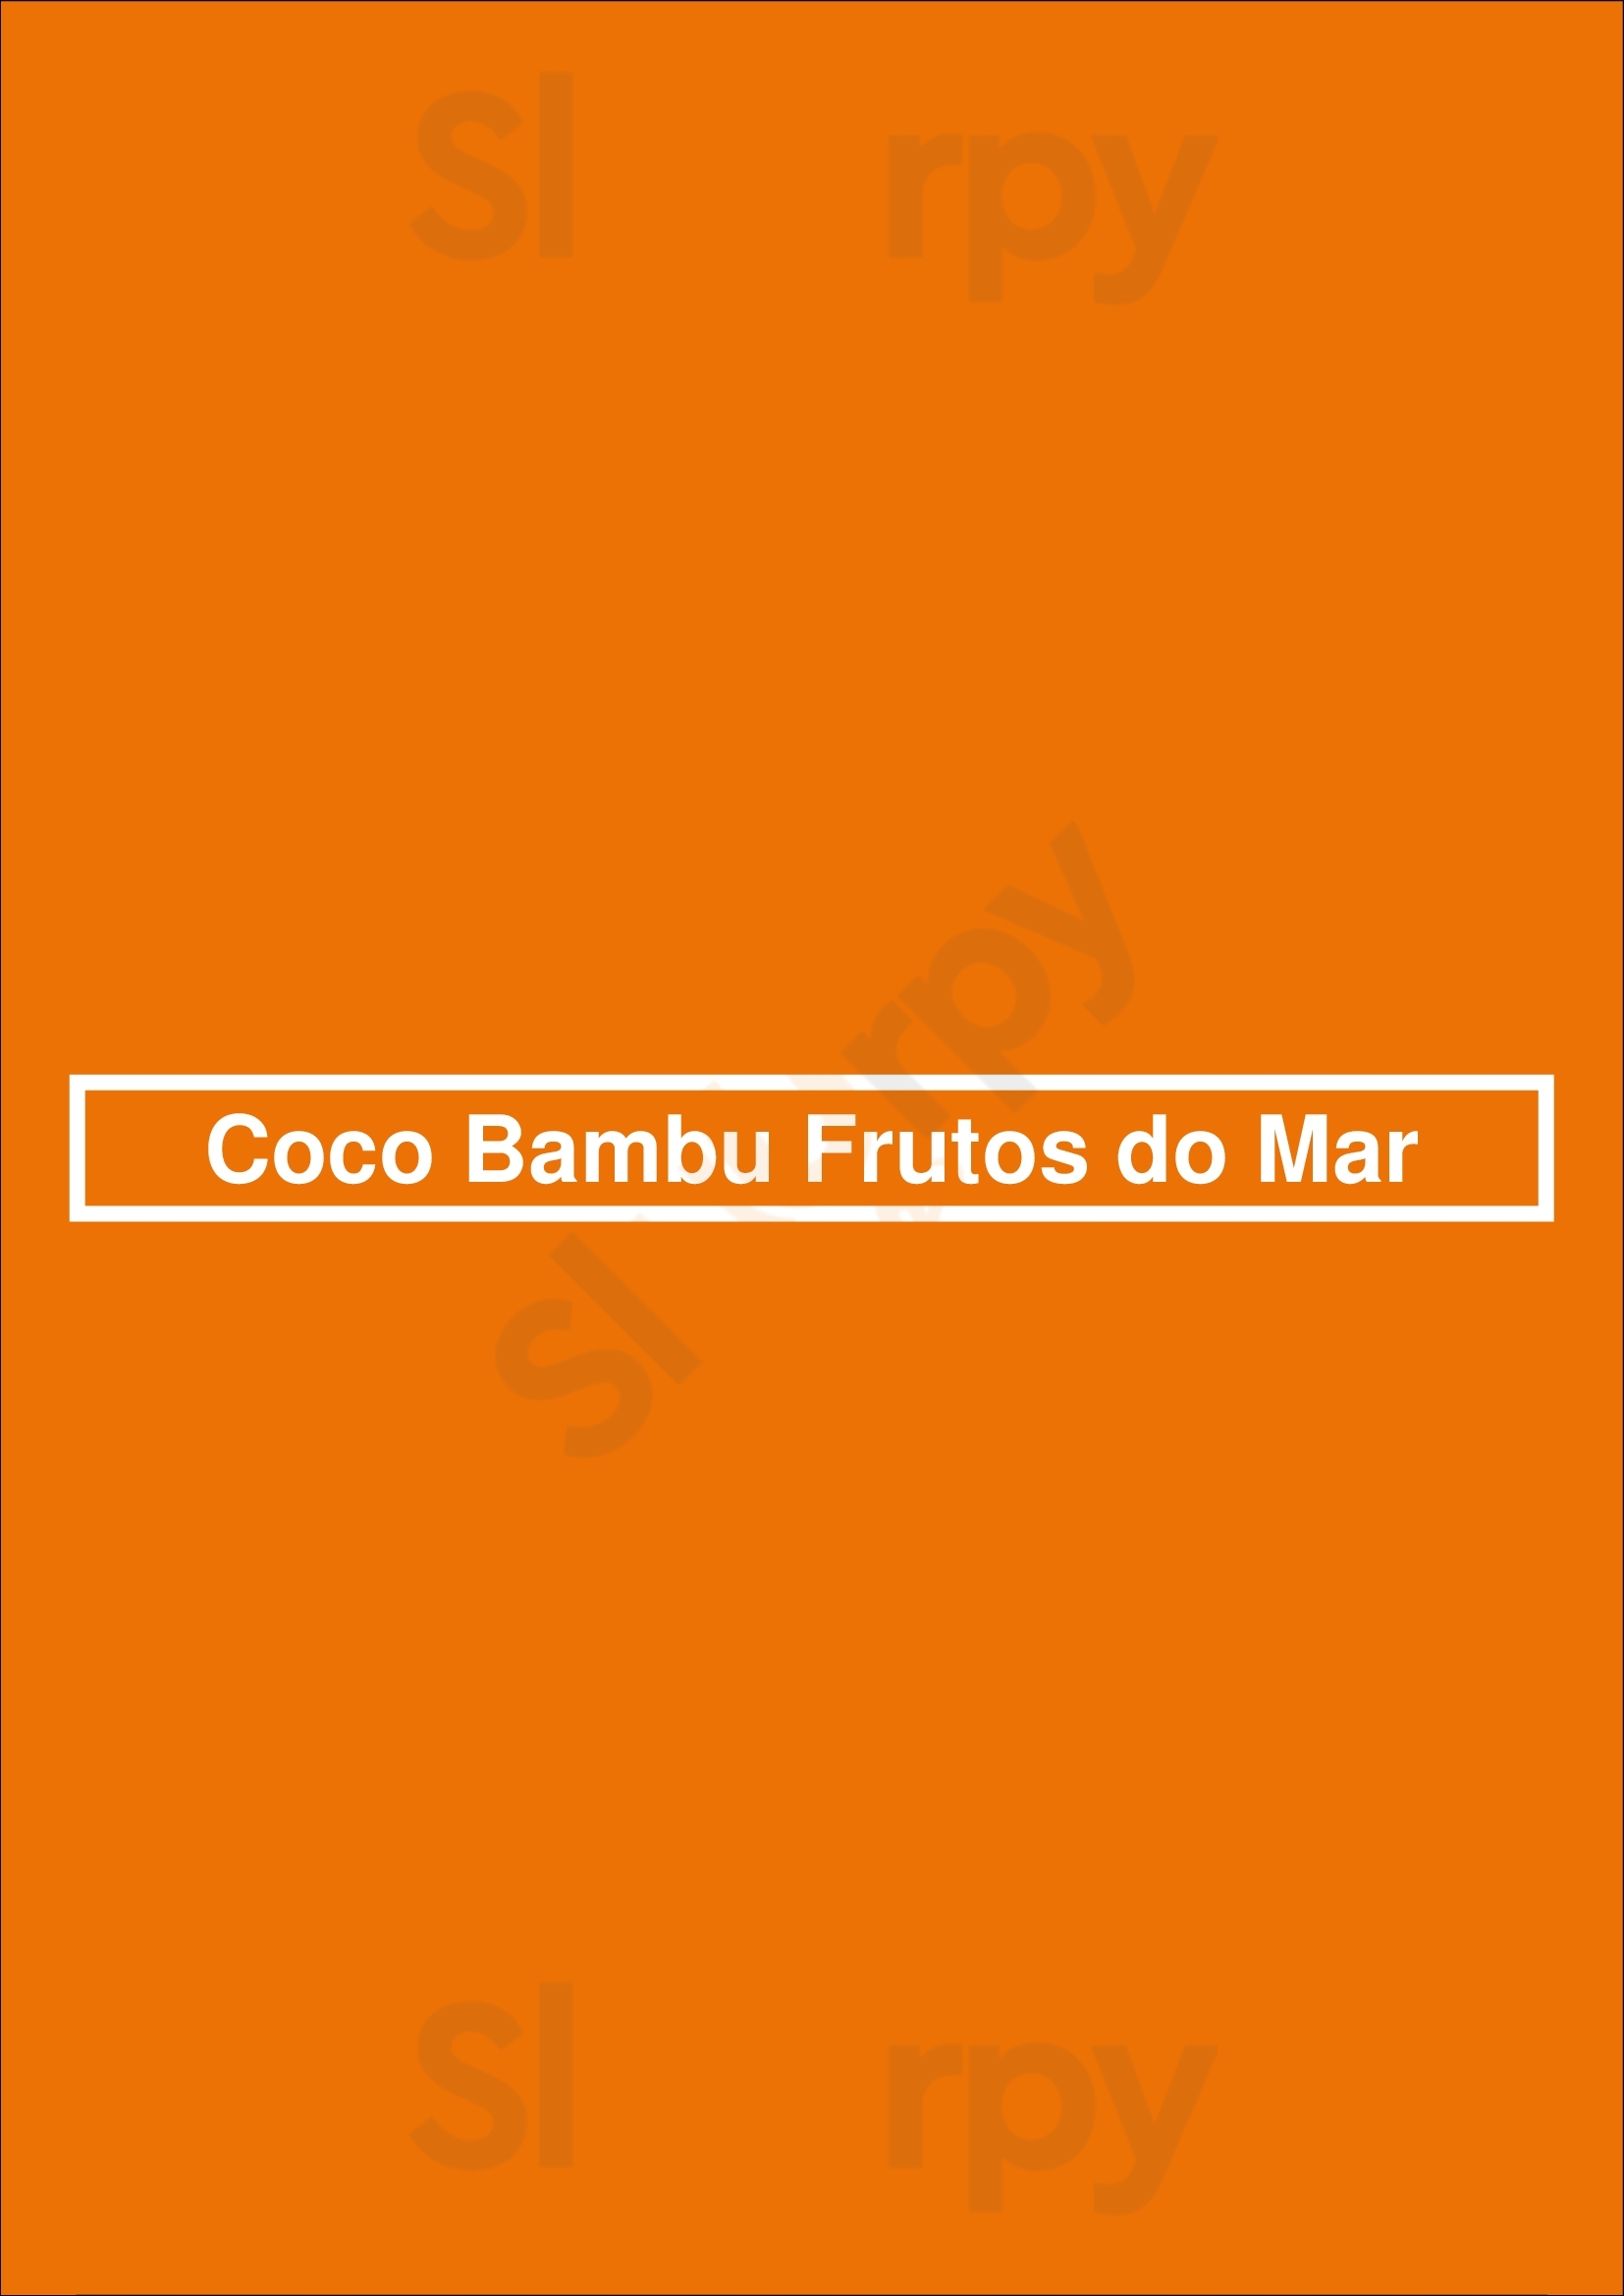 Coco Bambu Beira Mar Fortaleza Menu - 1